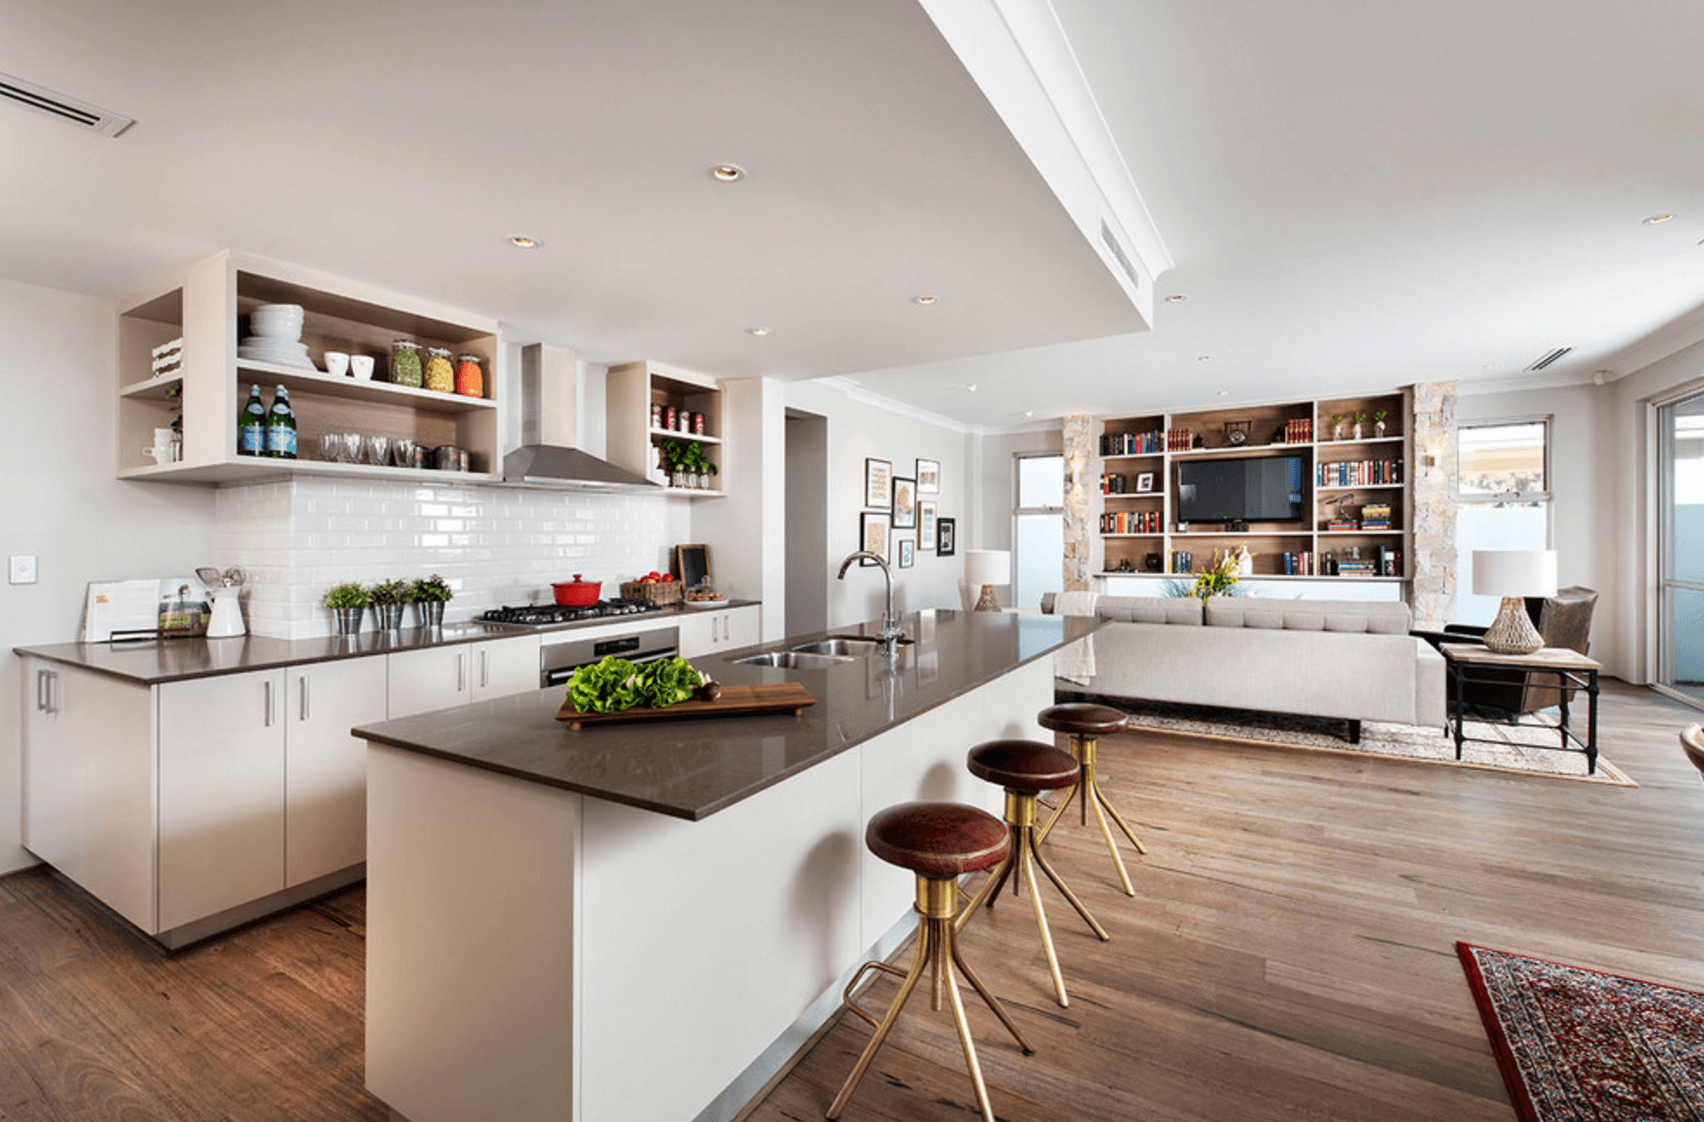 kitchen design in open floor plan